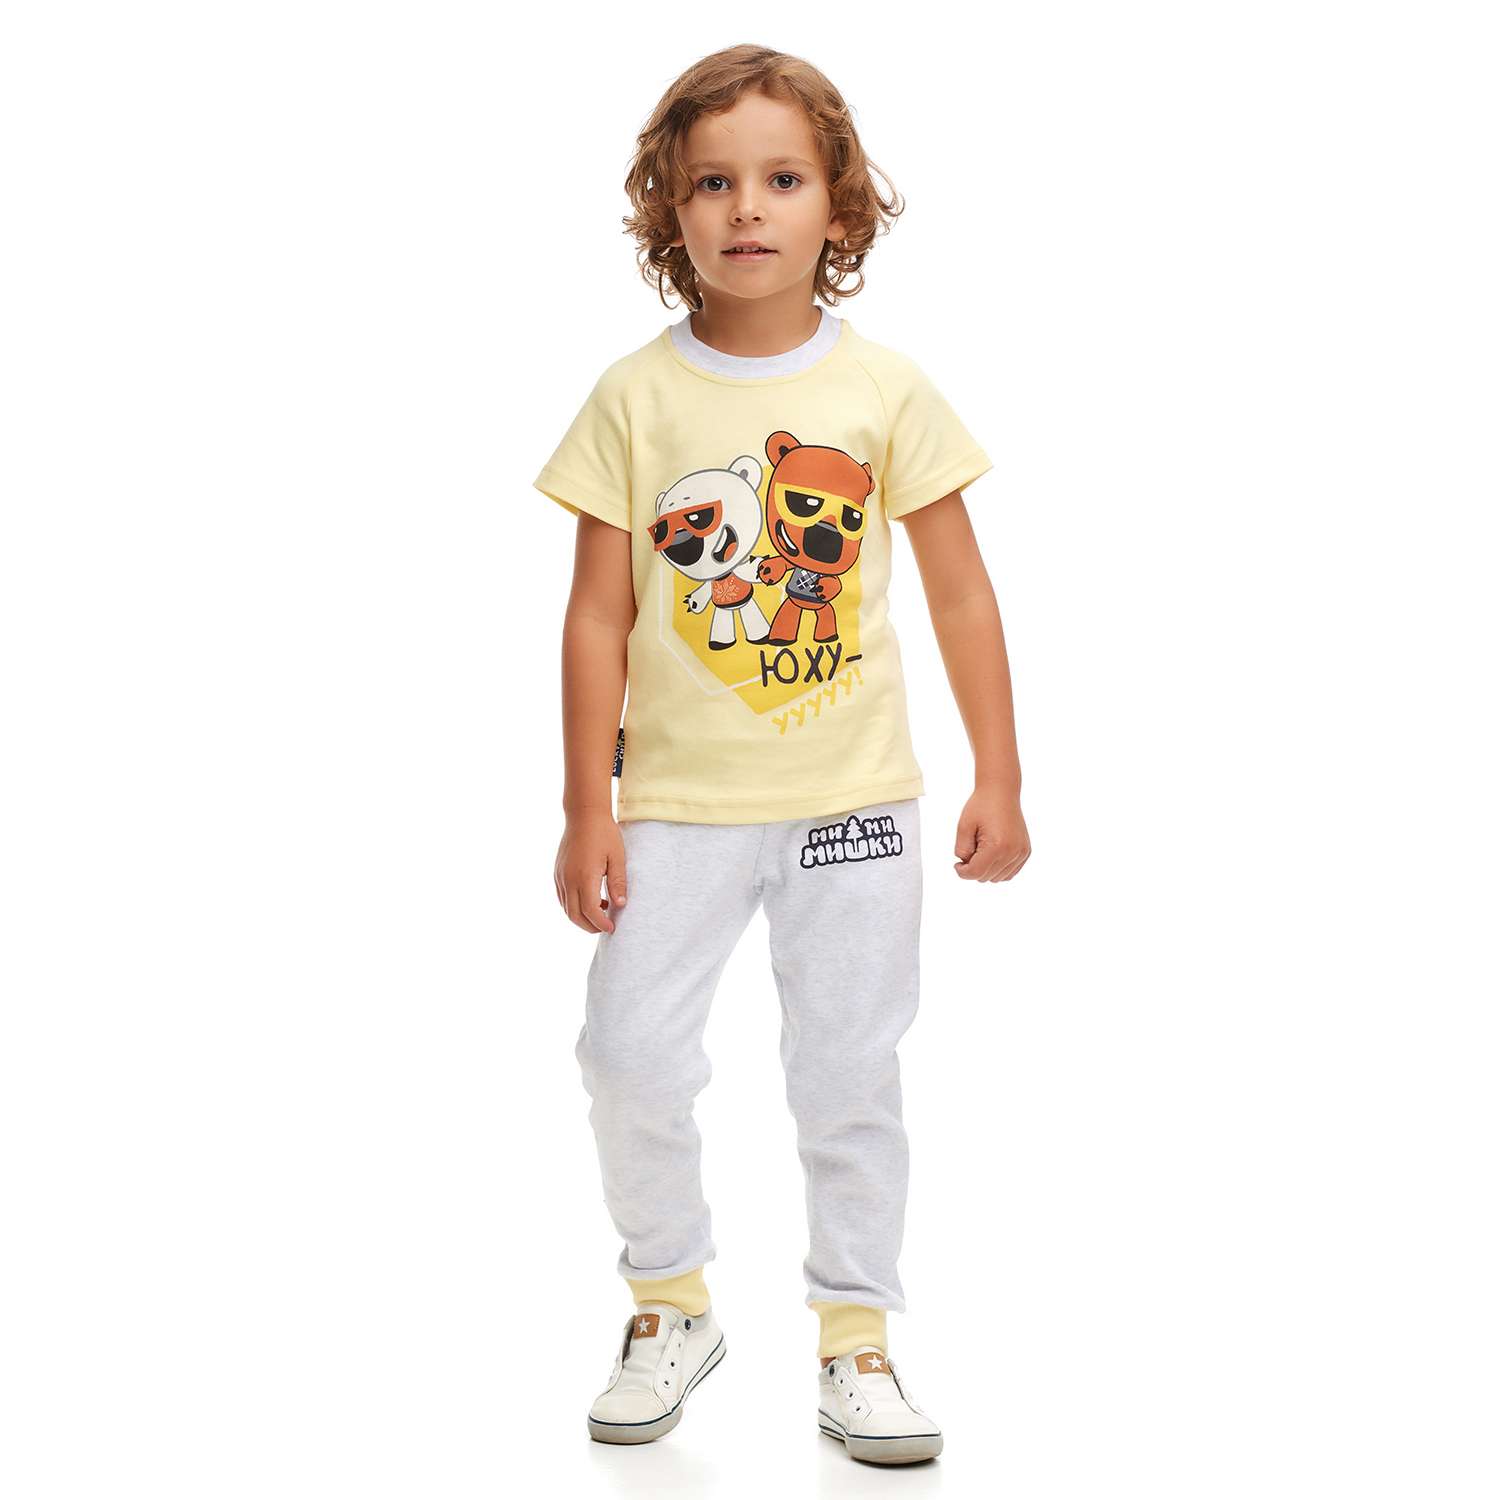 Пижама Lucky Child 70-405/2-7/желтый - фото 1